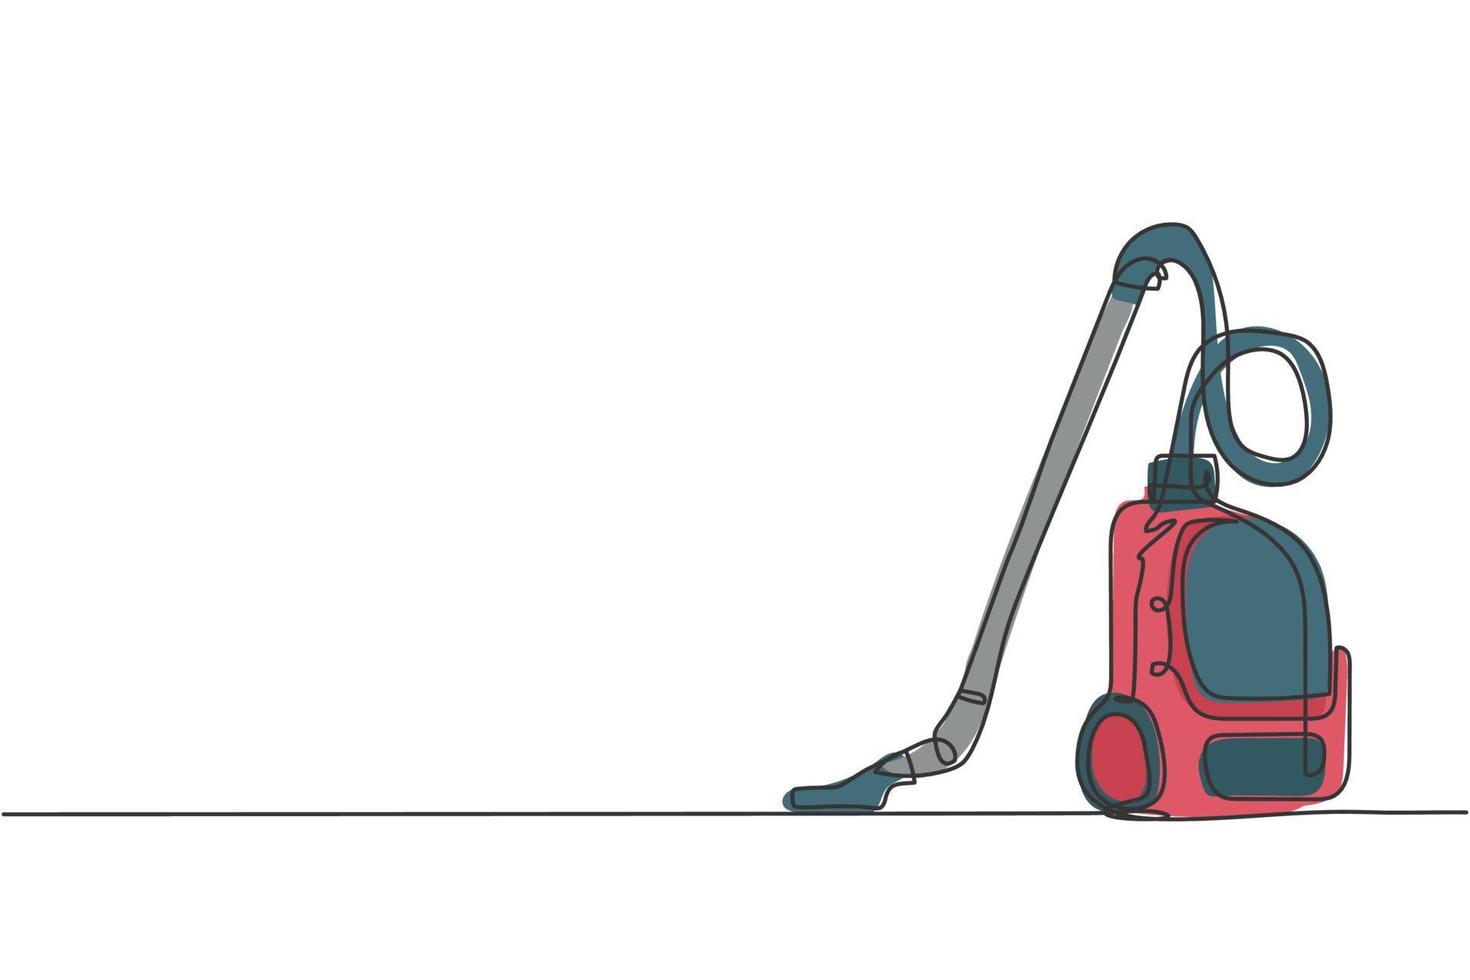 un disegno a tratteggio dell'elettrodomestico dell'aspirapolvere elettrico. concetto di strumenti domestici robot di pulizia senza fili di elettricità. illustrazione vettoriale grafica di disegno di disegno di linea continua dinamica